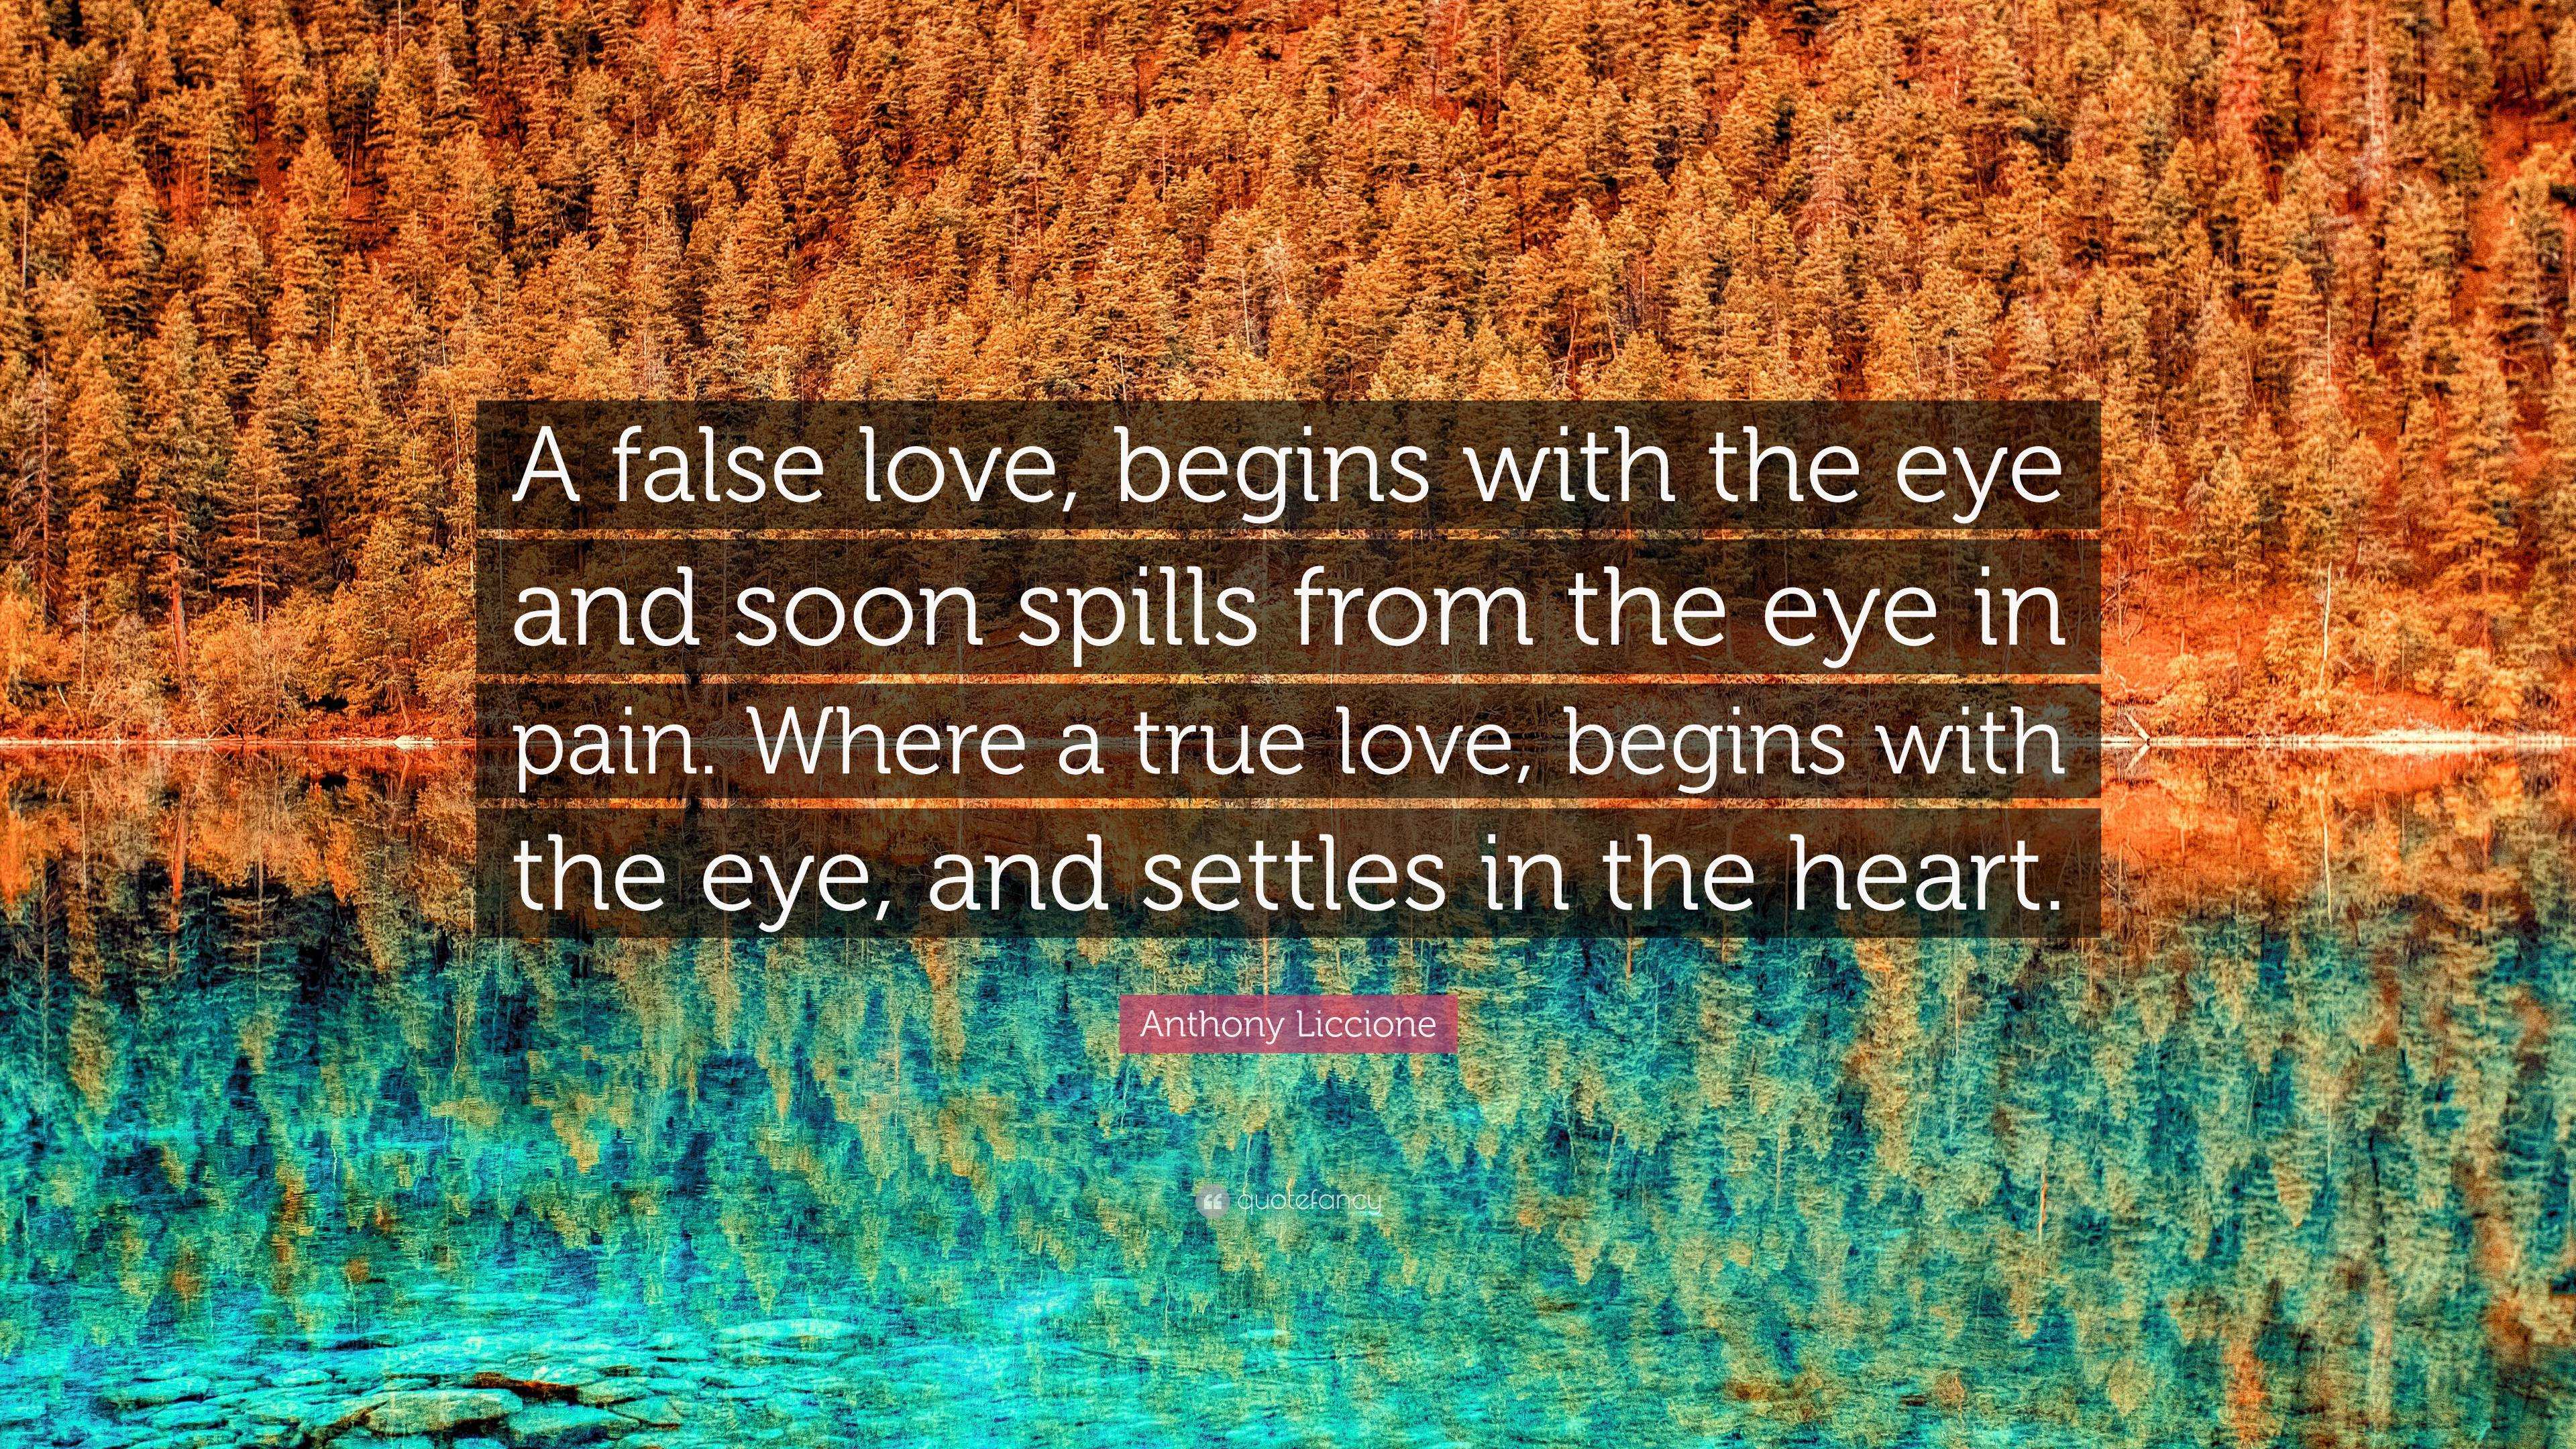 True-False Lover.